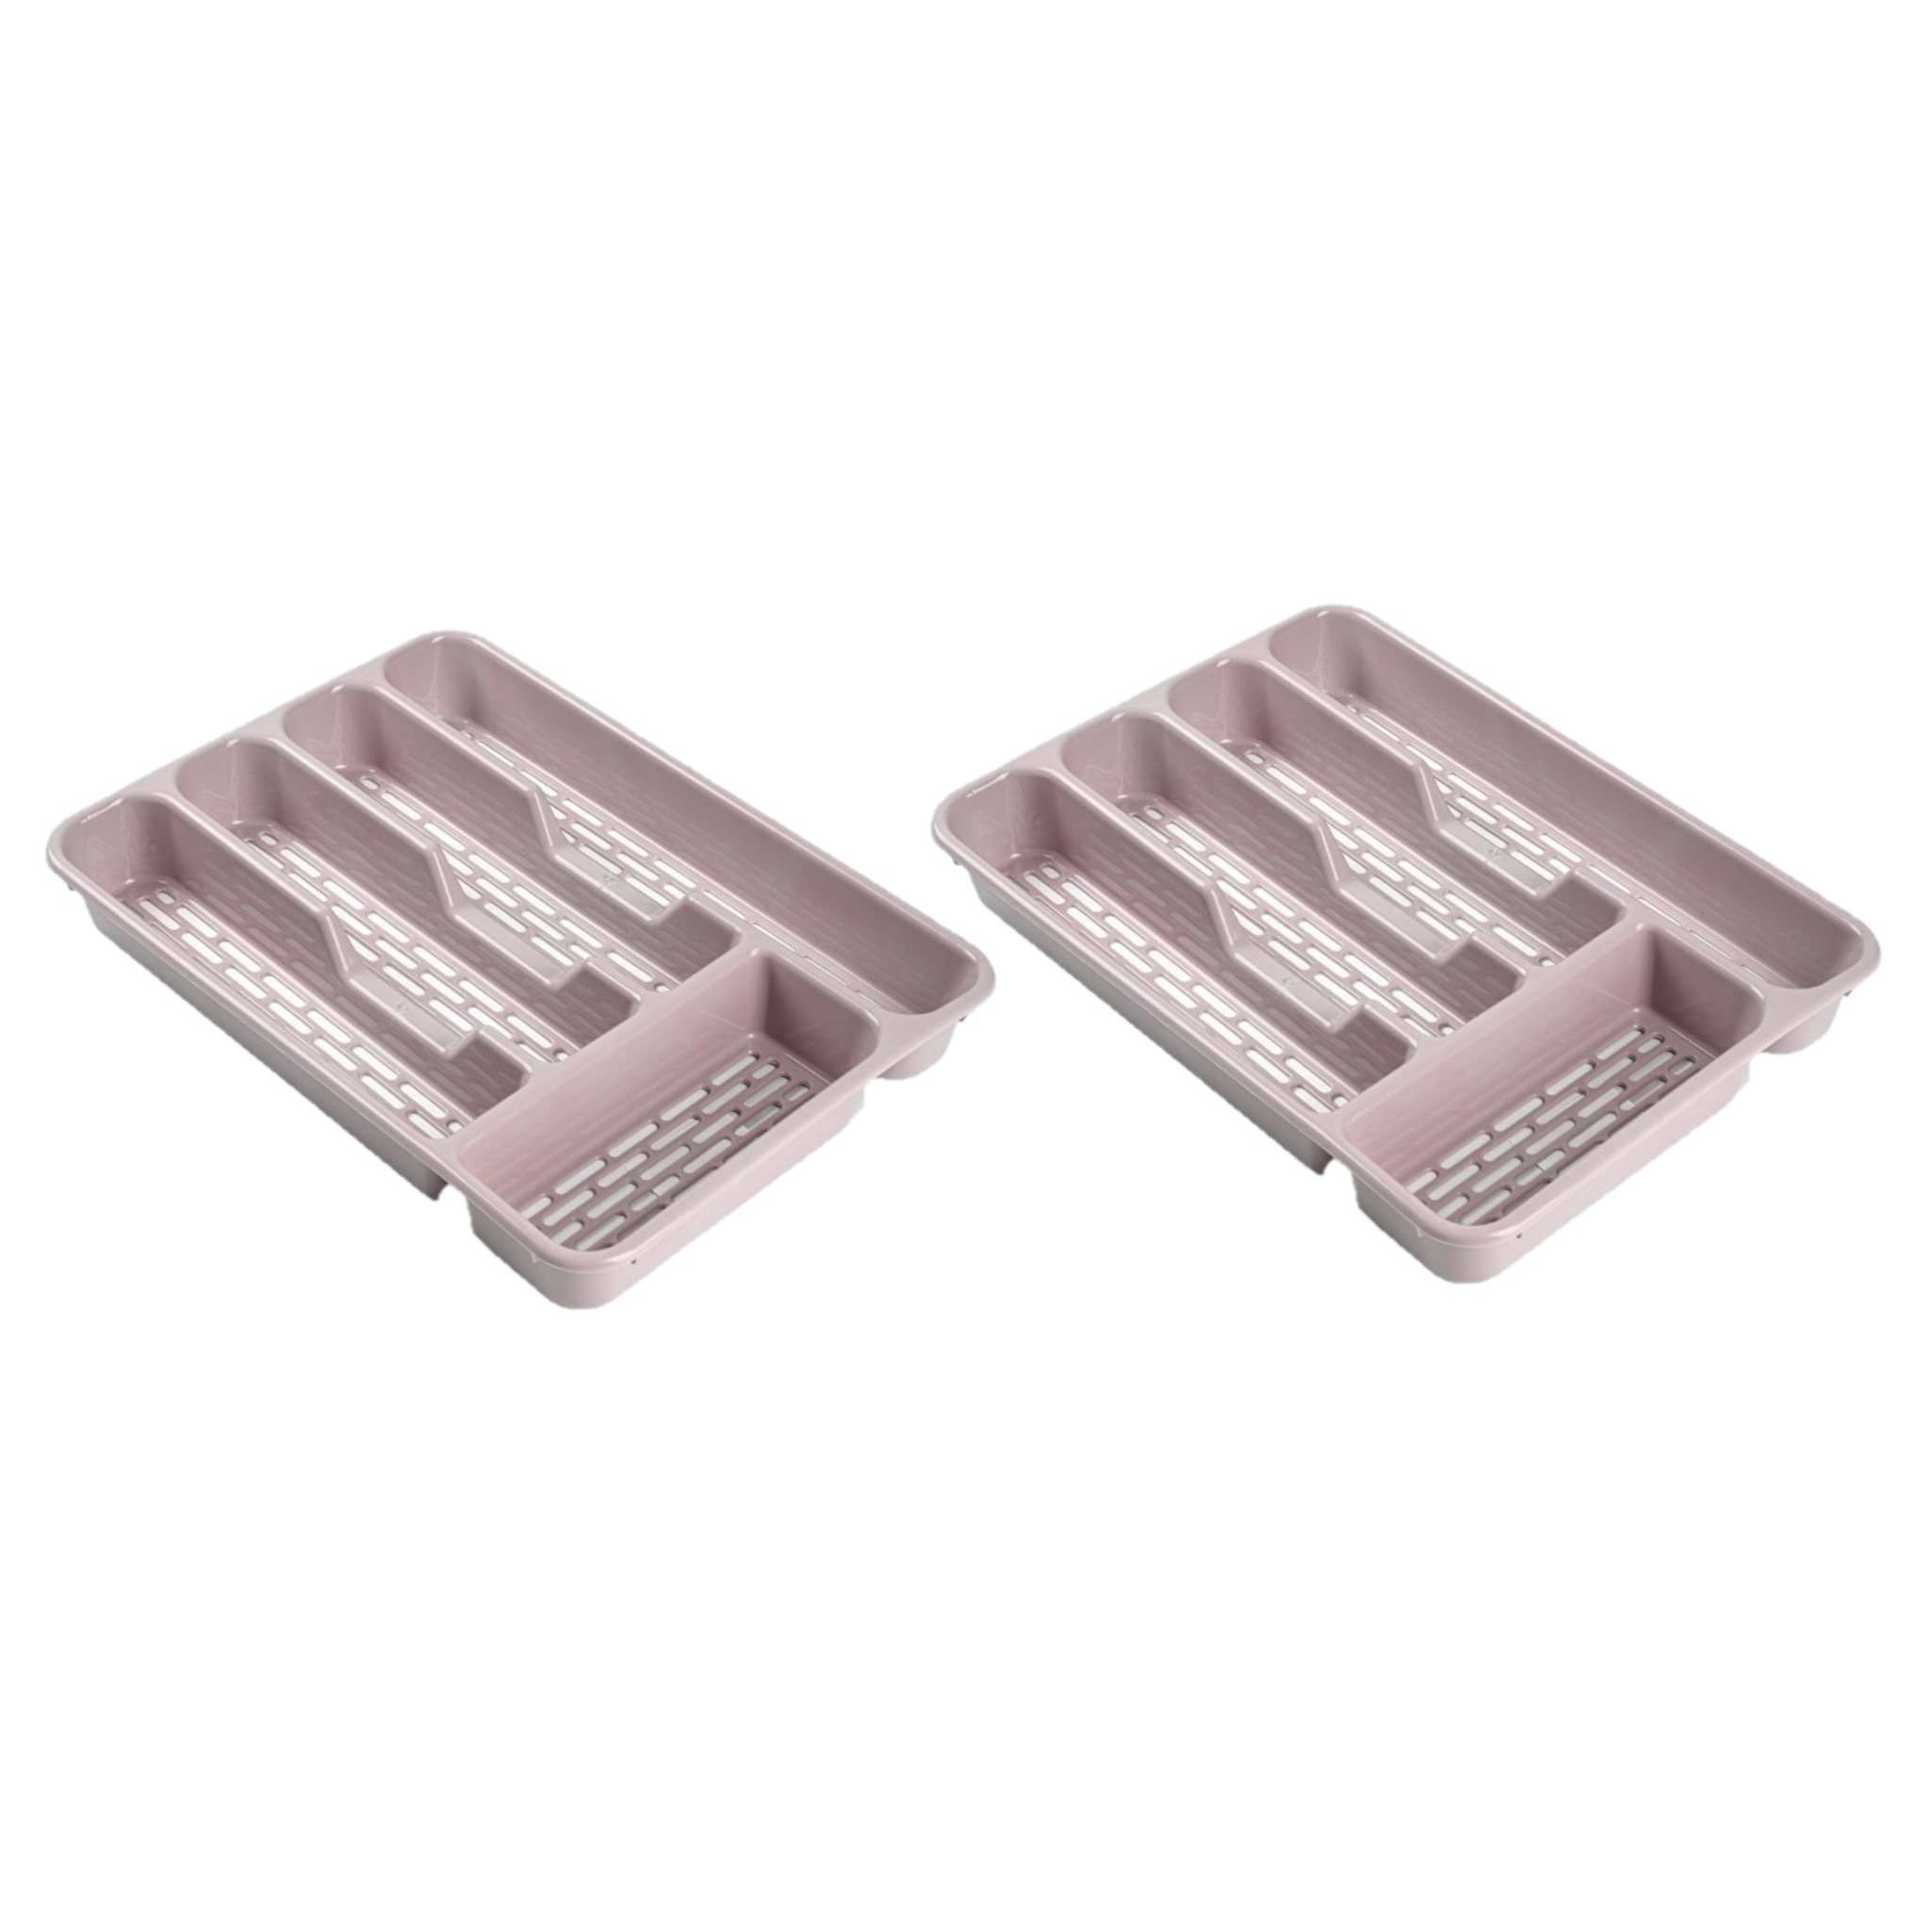 2x stuks bestekbakken-bestekhouders 5-vaks roze L33 x B24 x H4 cm